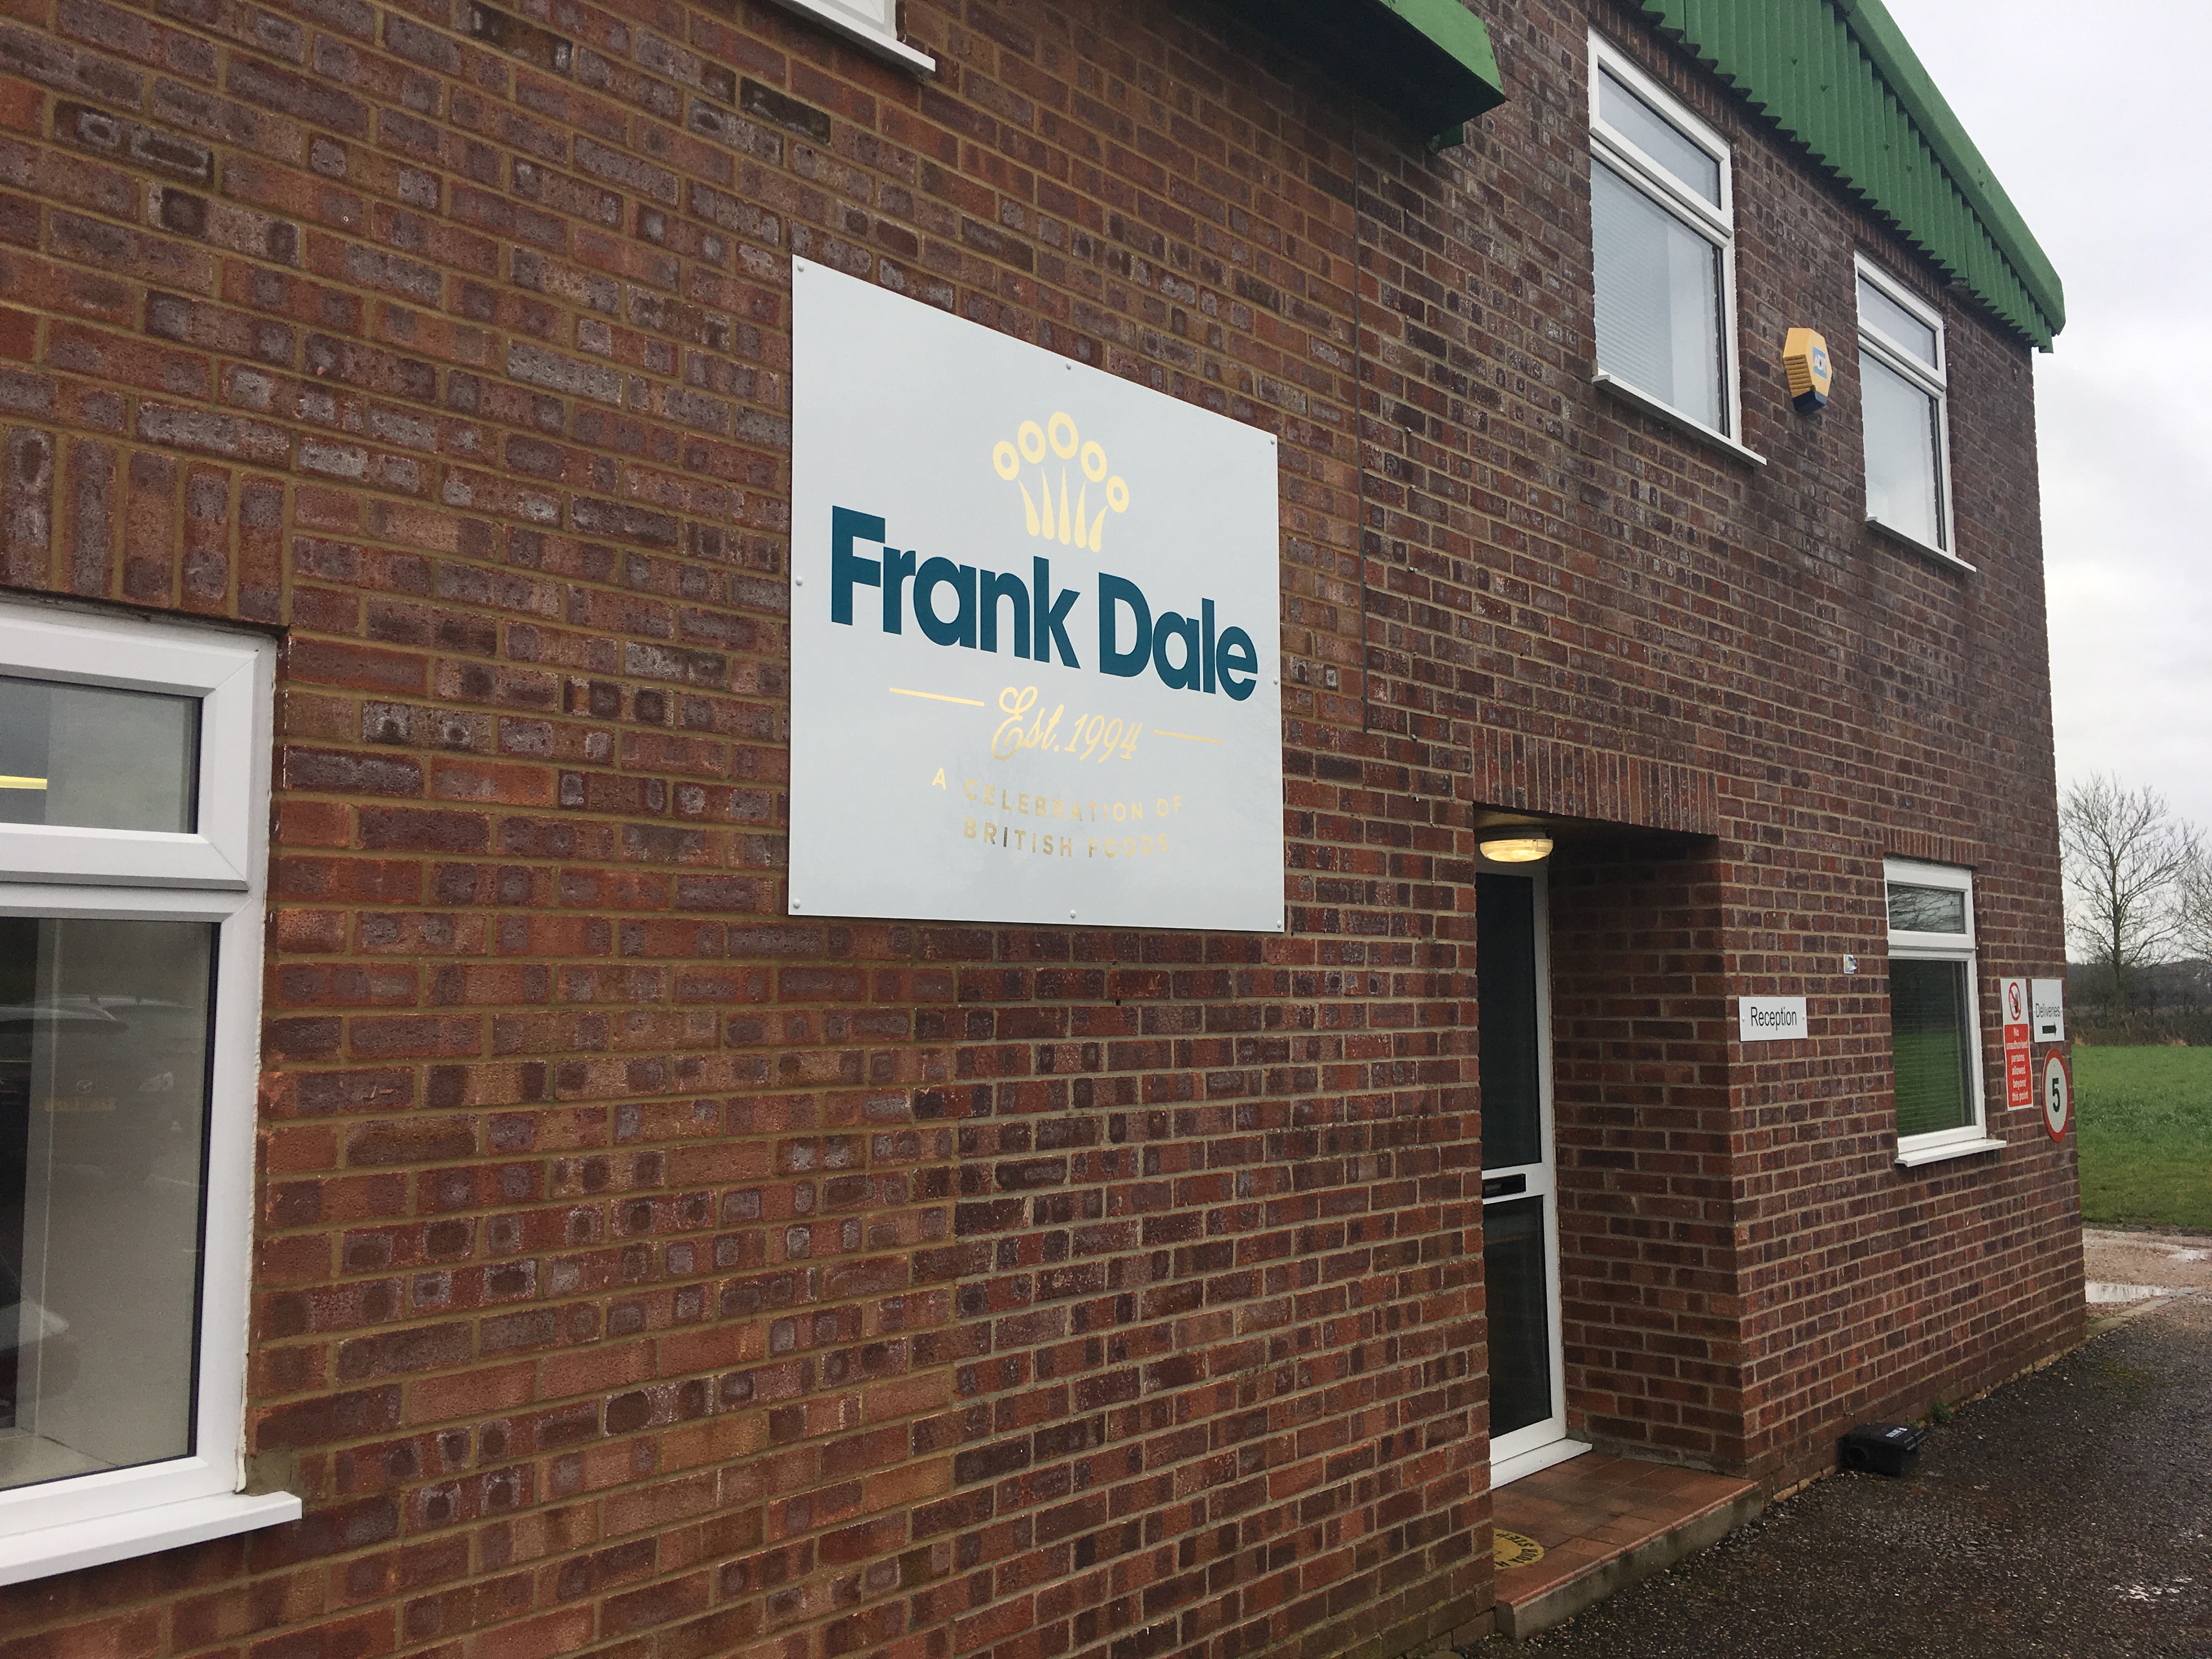 Frank Dale foods business premises